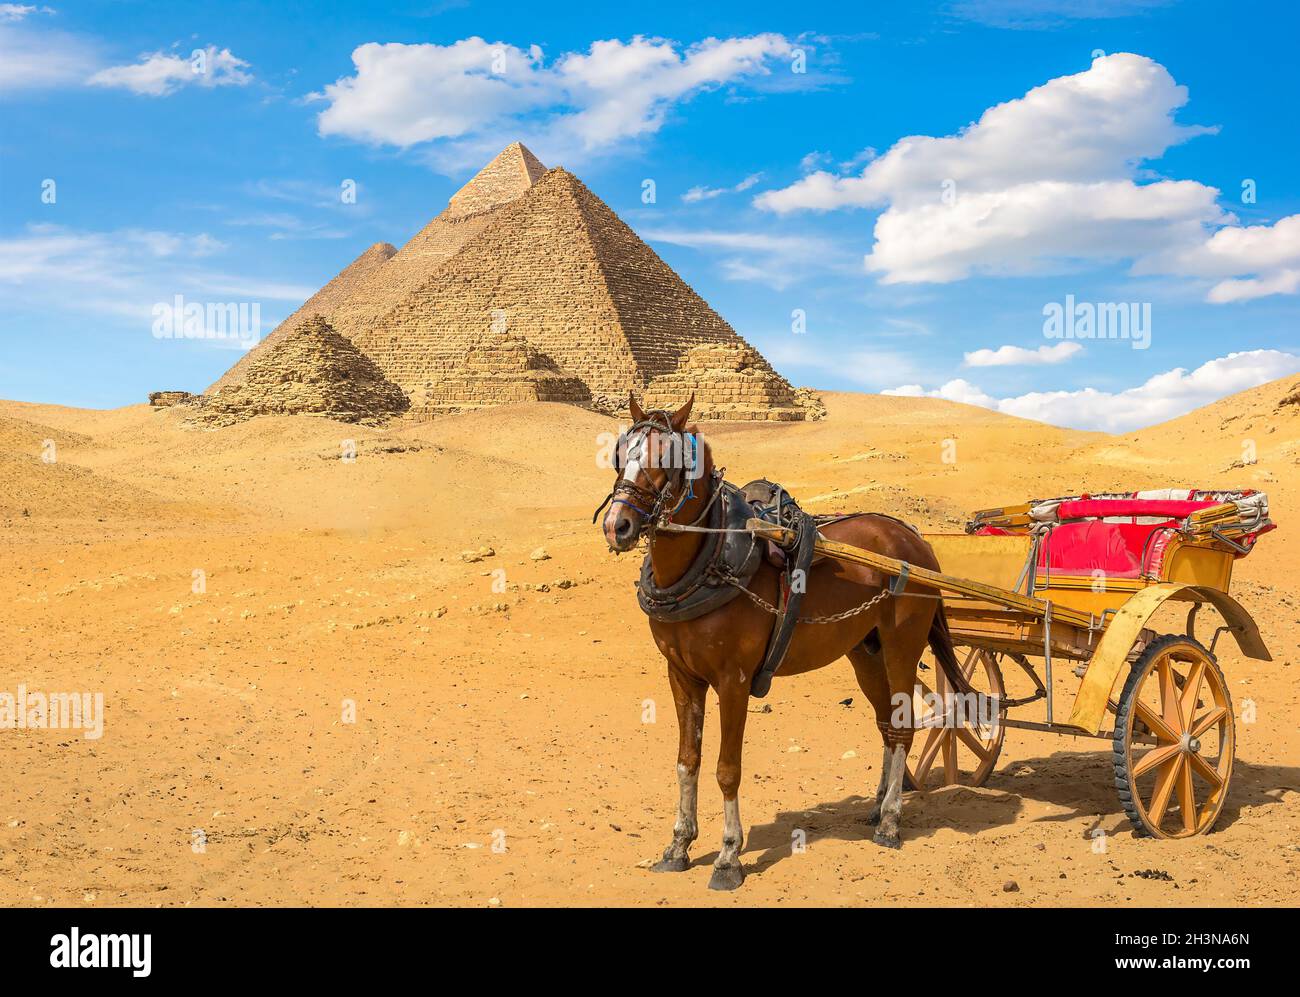 Horse near pyramids Stock Photo